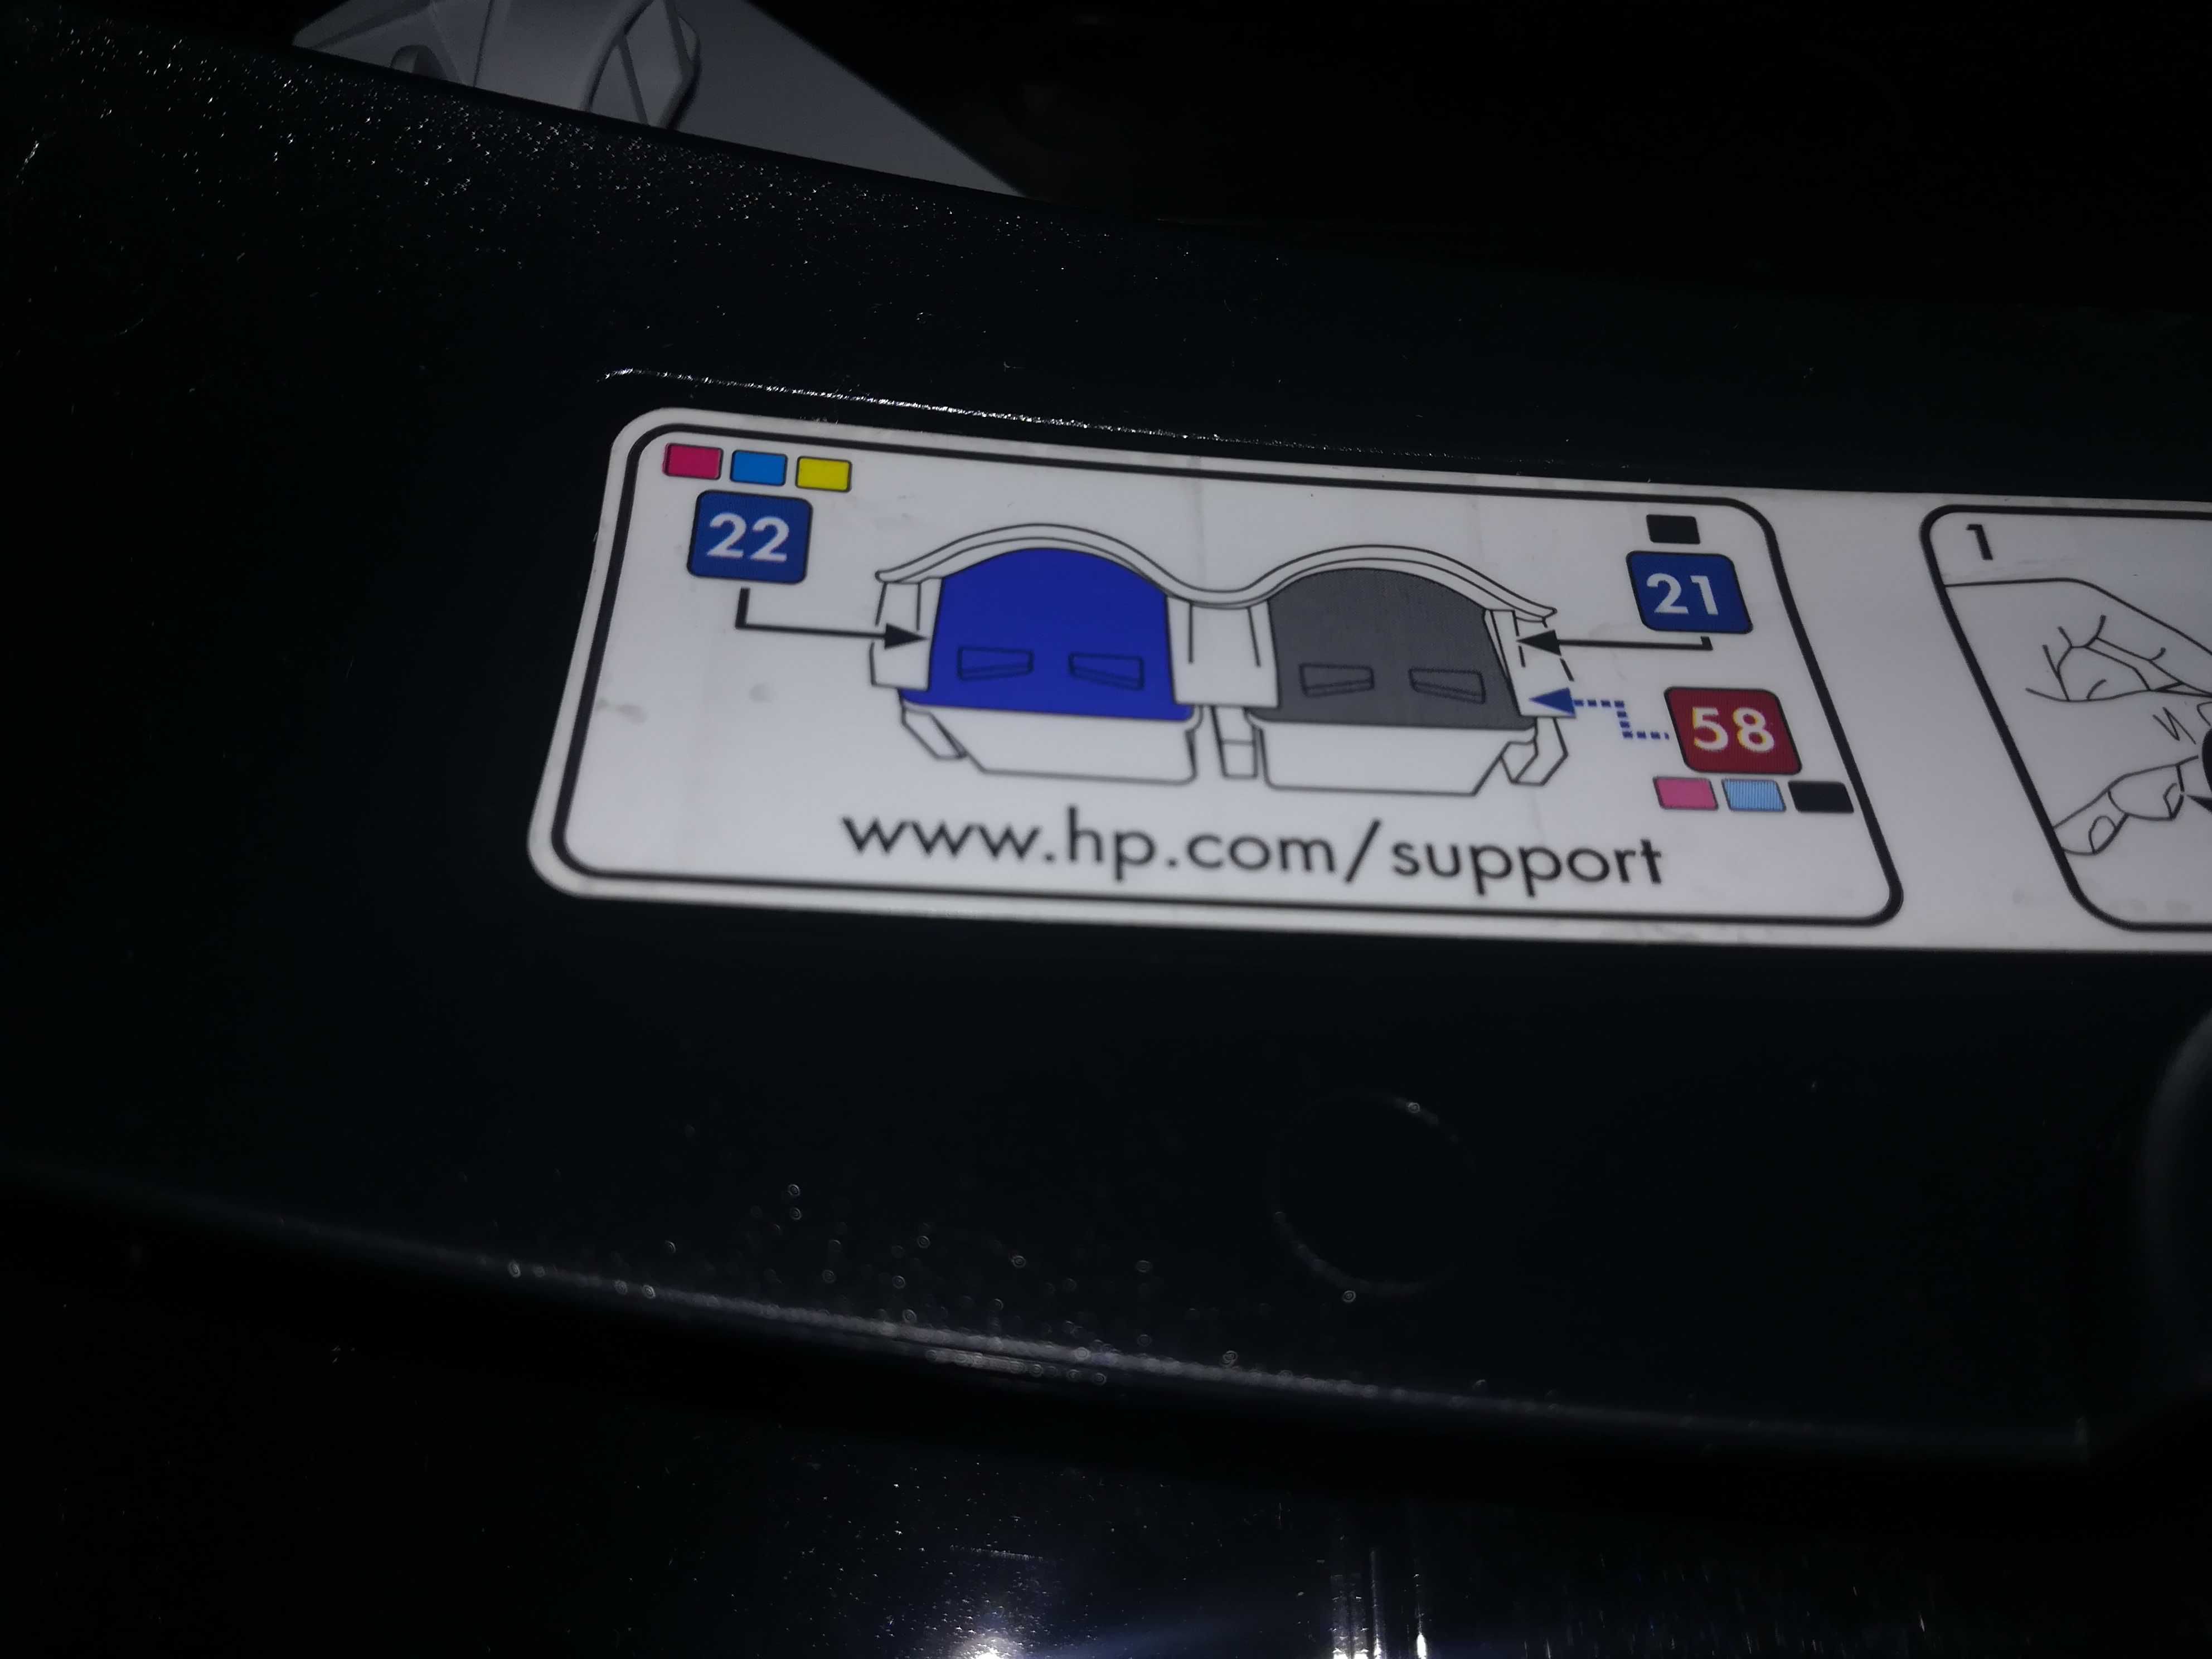 Impressora HP Deskjet